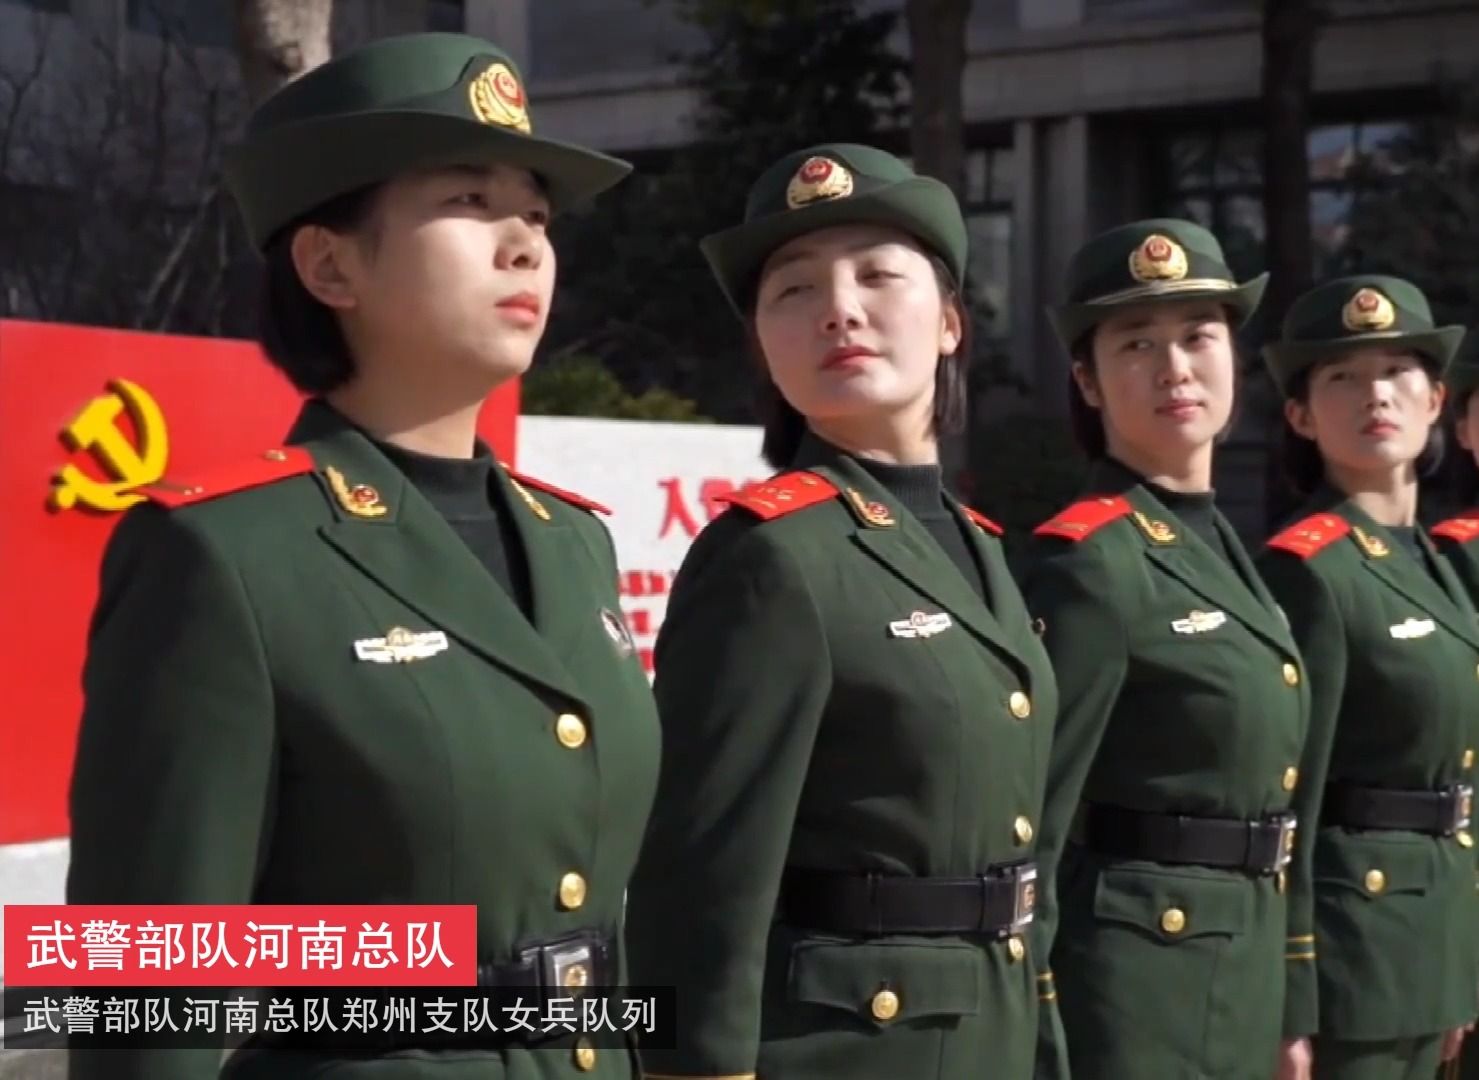 这一波,武警部队郑州支队女兵气势值拉满!